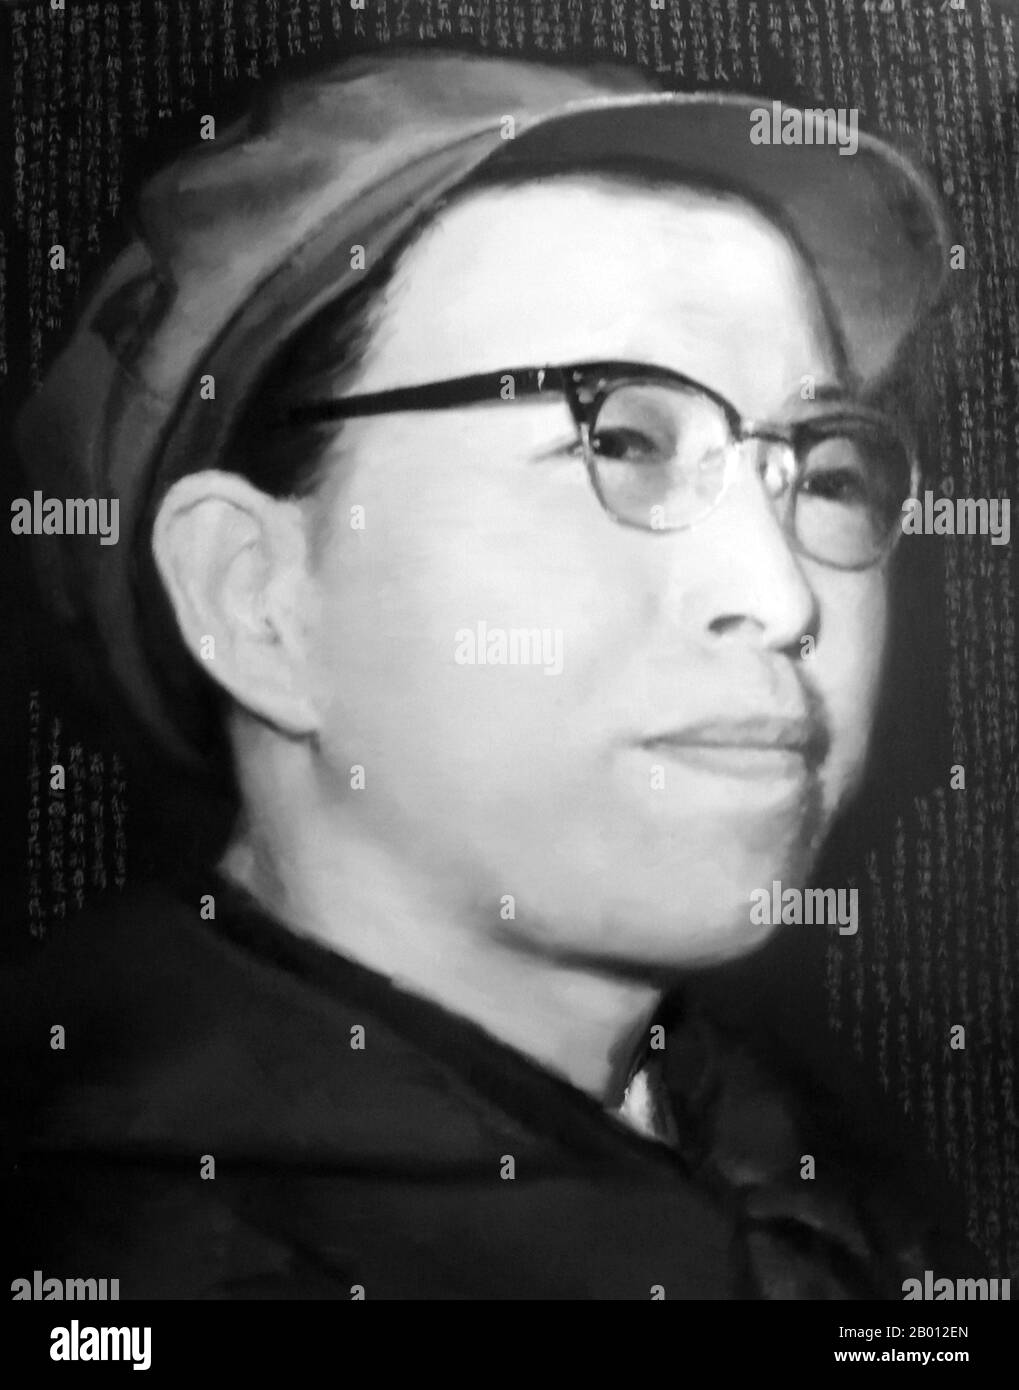 Chine : Jiang Qing (1914-1991), également connue sous le nom de Madame Mao, au plus haut de son pouvoir dans la Révolution culturelle, c. 1969. Jiang Qing (Chiang CH'ing, 1914 mars – 14 mai 1991) était le pseudonyme utilisé par la dernière femme du dirigeant chinois Mao Tsé-toung et la figure de pouvoir majeure du Parti communiste chinois. Elle est allée par le nom de scène LAN Ping au cours de sa carrière d'acteur, et a été connu par divers autres noms pendant sa vie. Elle a épousé Mao à Ya'an en novembre 1938, et est parfois appelée Madame Mao dans la littérature occidentale, servant de première dame de la Chine communiste. Banque D'Images